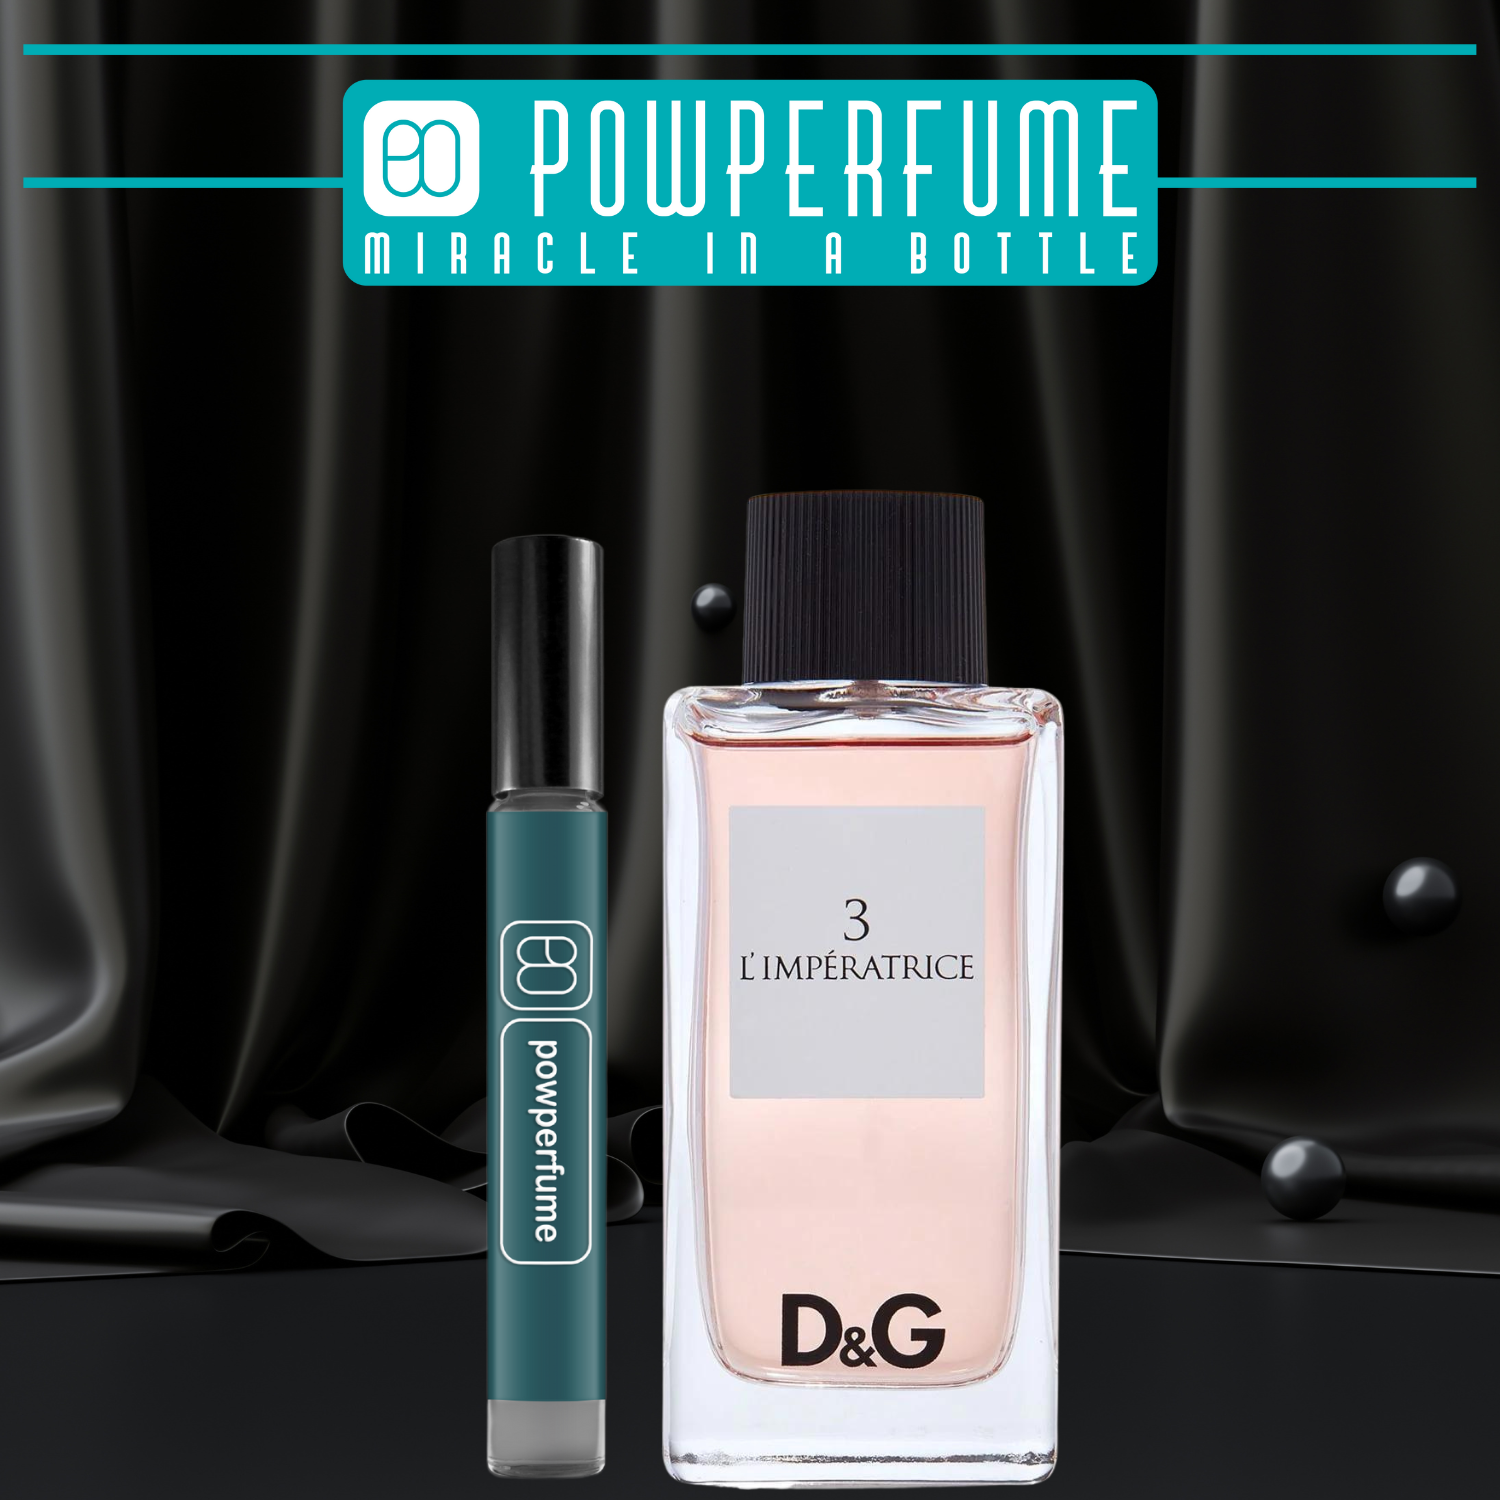 SALE] Mẫu thử 10ml DG L'imperatrice 3 chính hãng - Nước Hoa Nữ - Pow Perfume  - MixASale